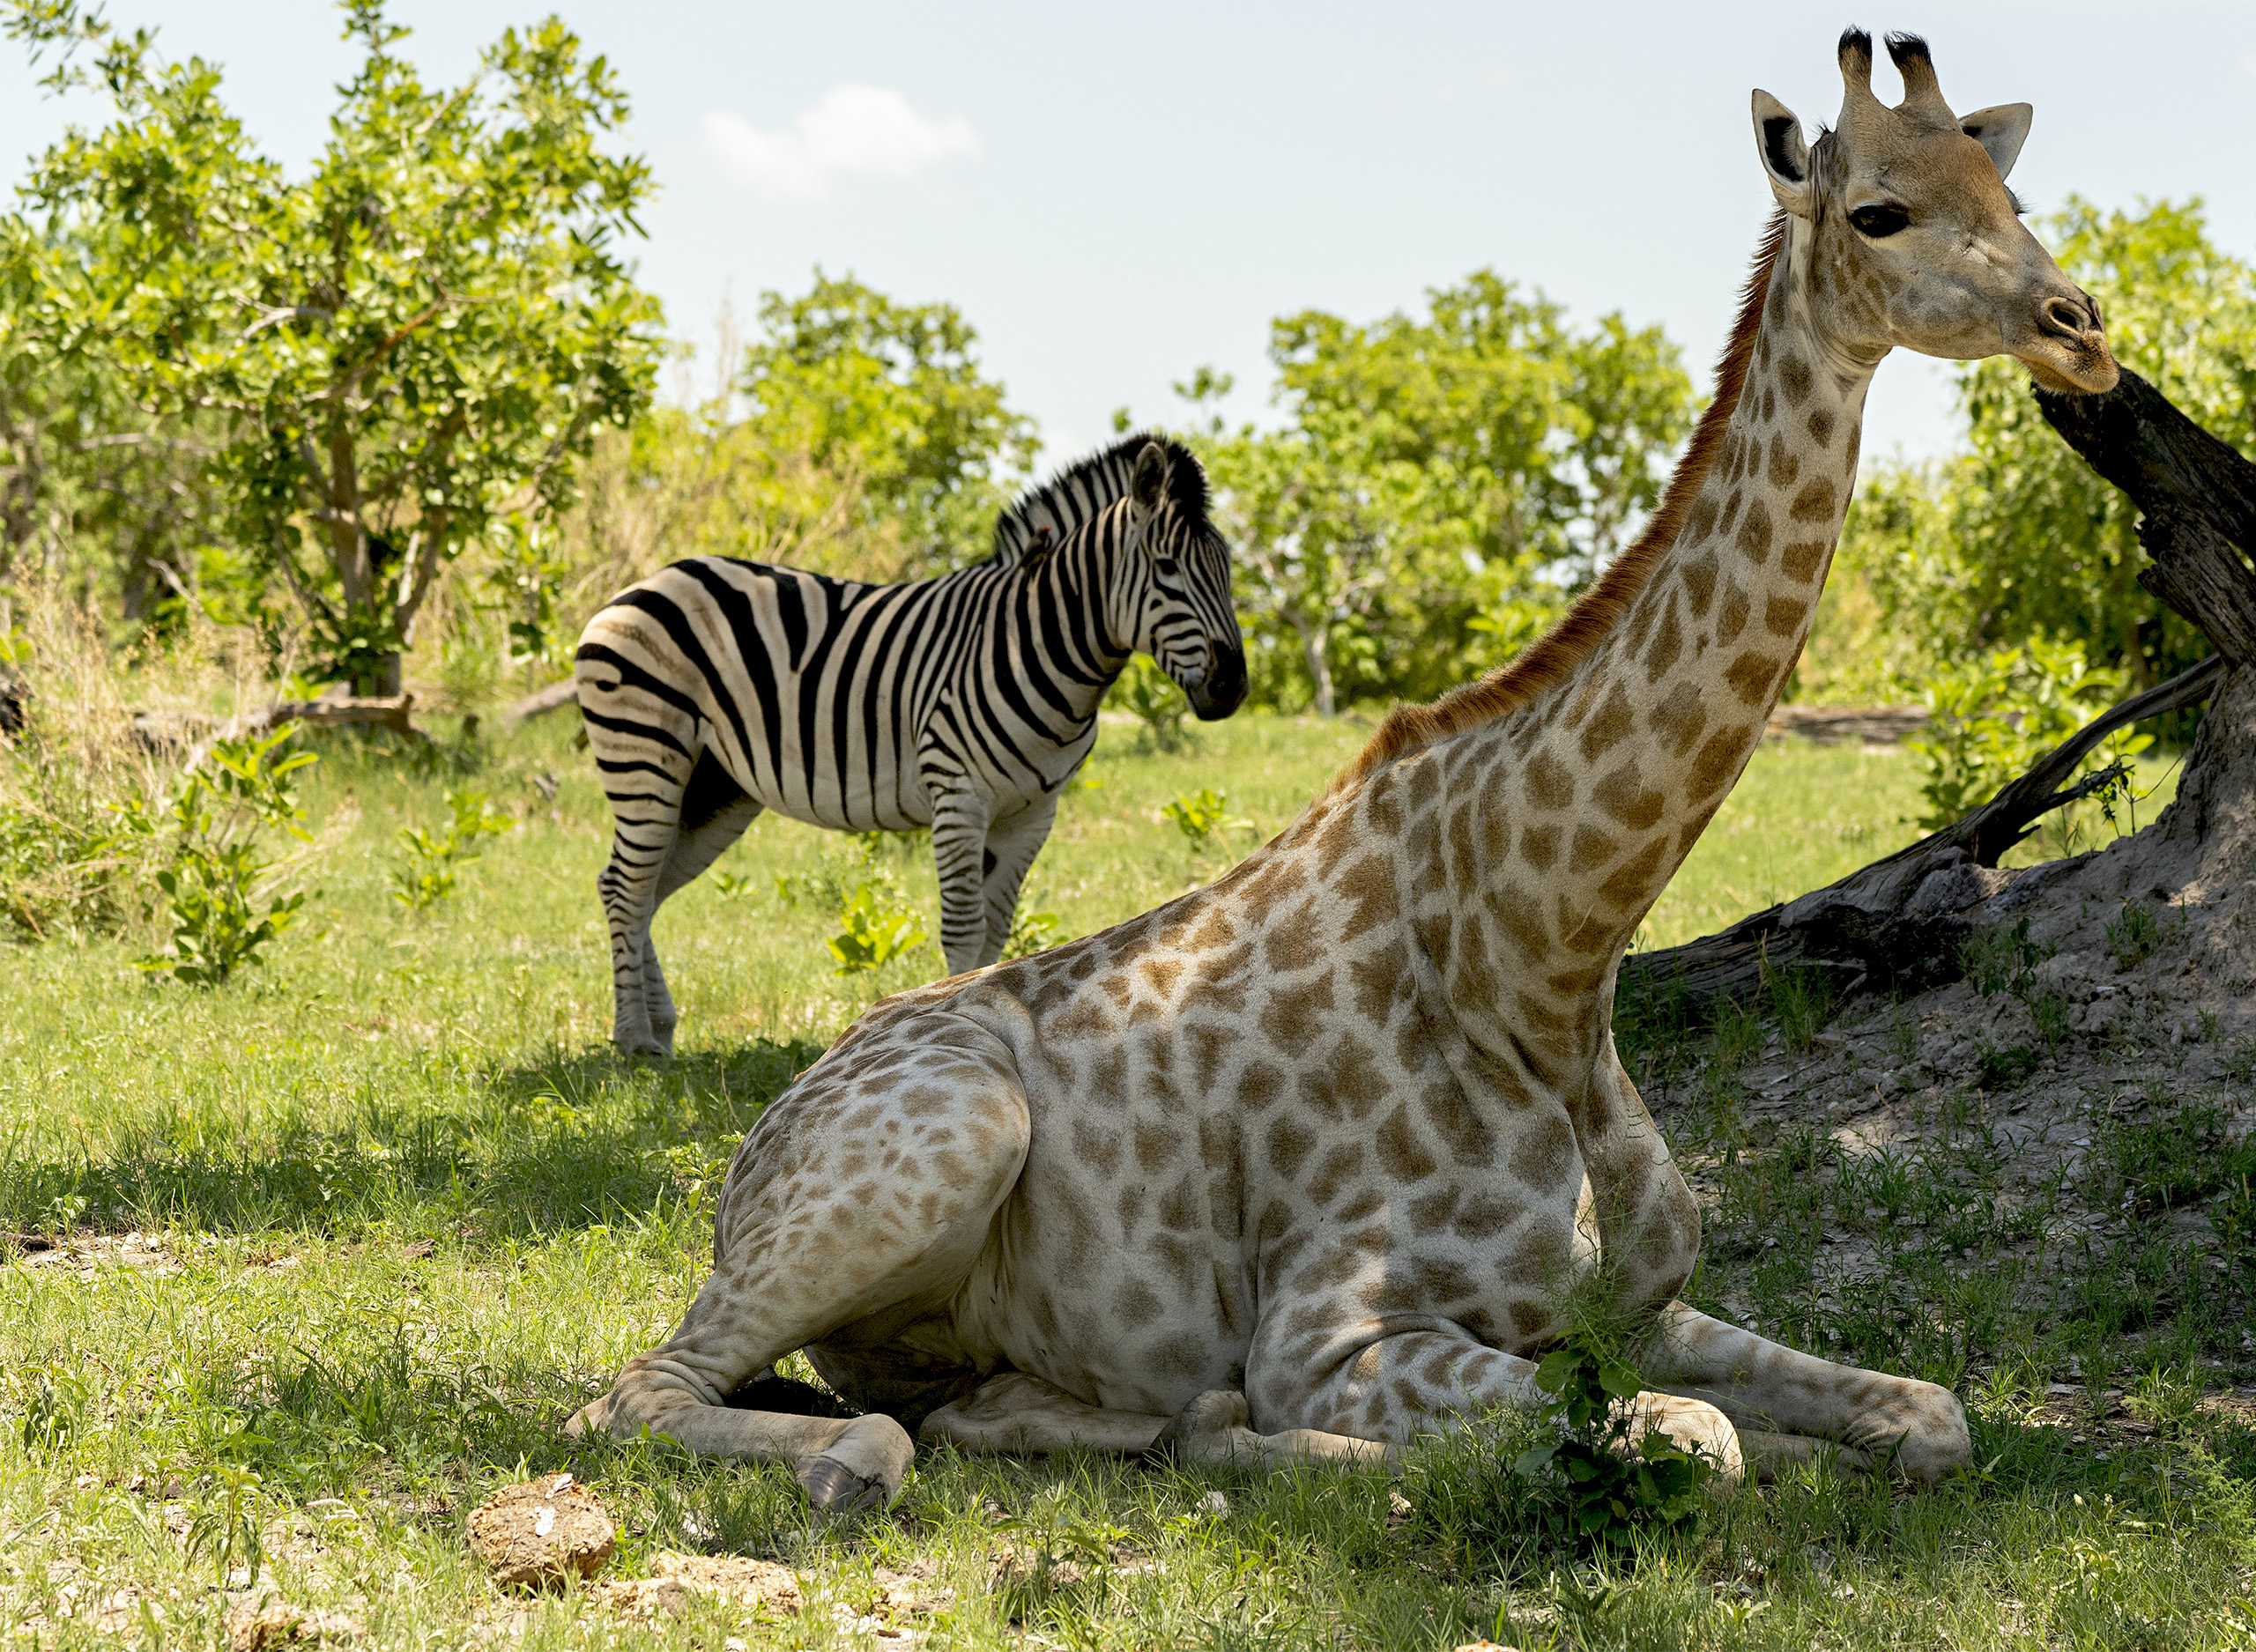 Giraffe & zebra